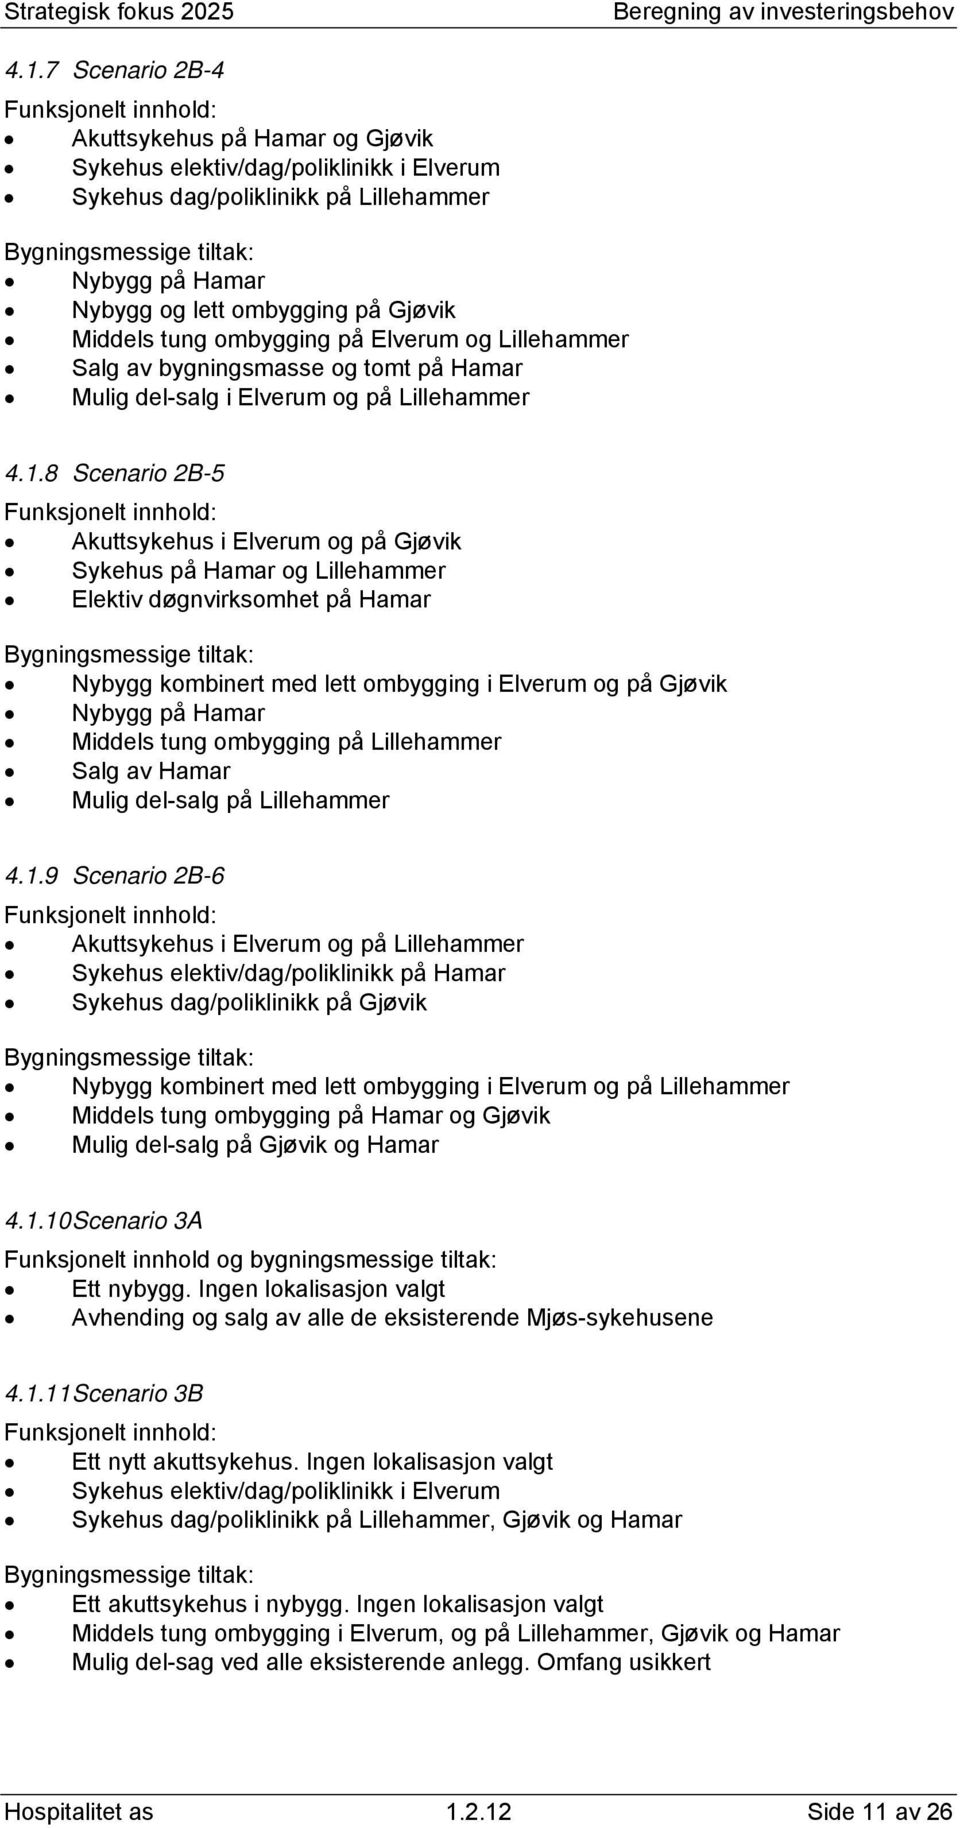 8 Scenario 2B-5 Funksjonelt innhold: Akuttsykehus i Elverum og på Gjøvik Sykehus på Hamar og Lillehammer Elektiv døgnvirksomhet på Hamar Bygningsmessige tiltak: Nybygg kombinert med lett ombygging i